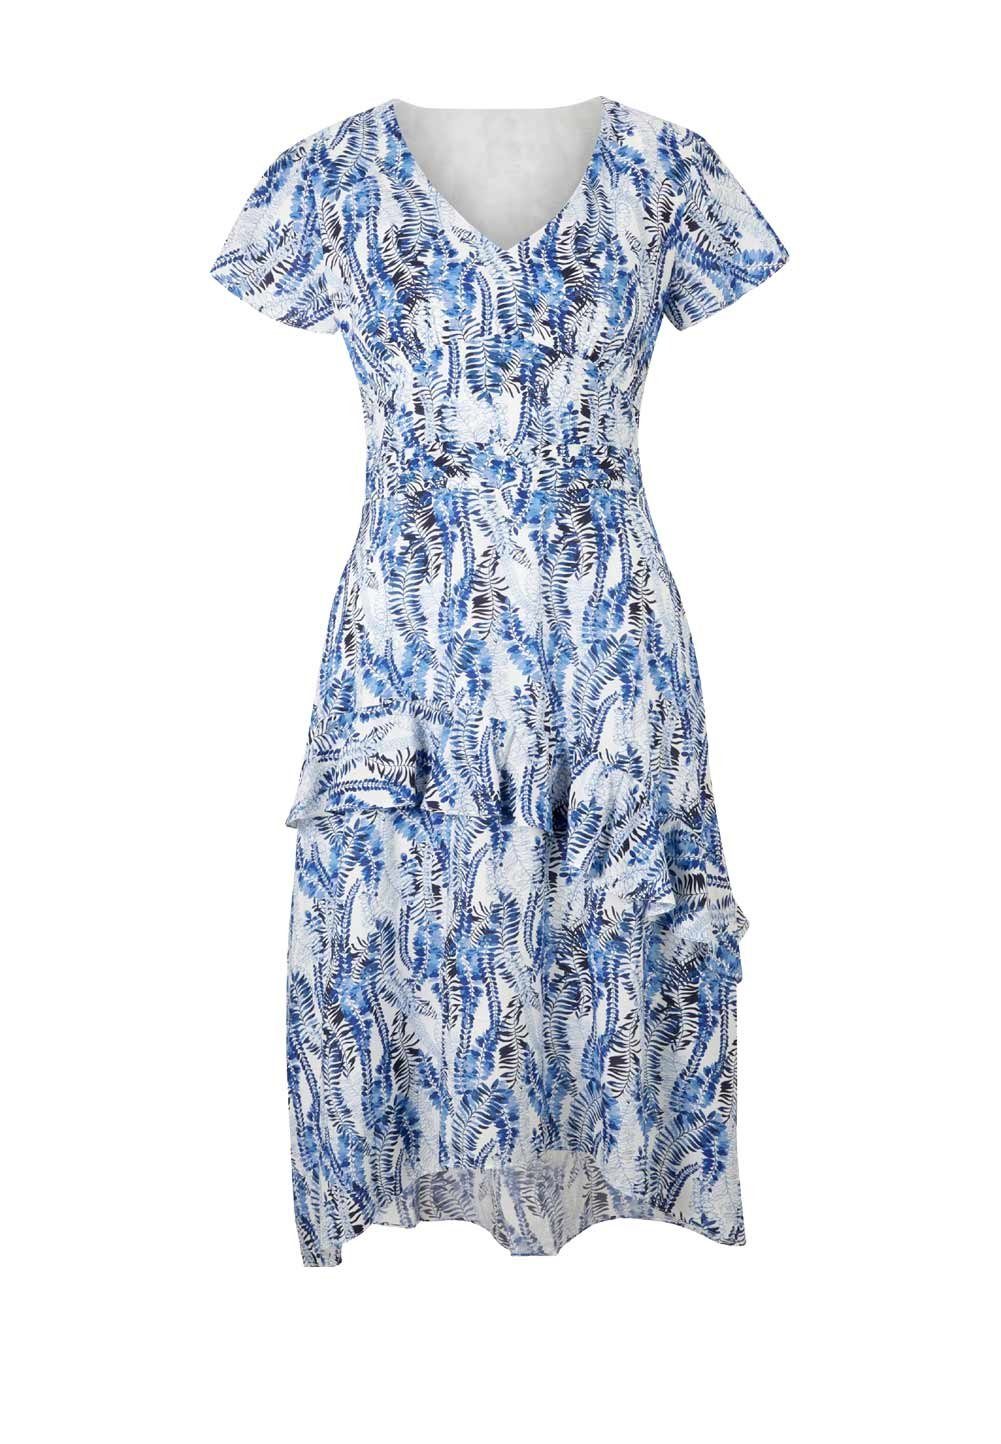 Ashley Brooke by heine Damen weiß-blau m. ASHLEY Volants, BROOKE Designer-Seidenkleid Shirtkleid